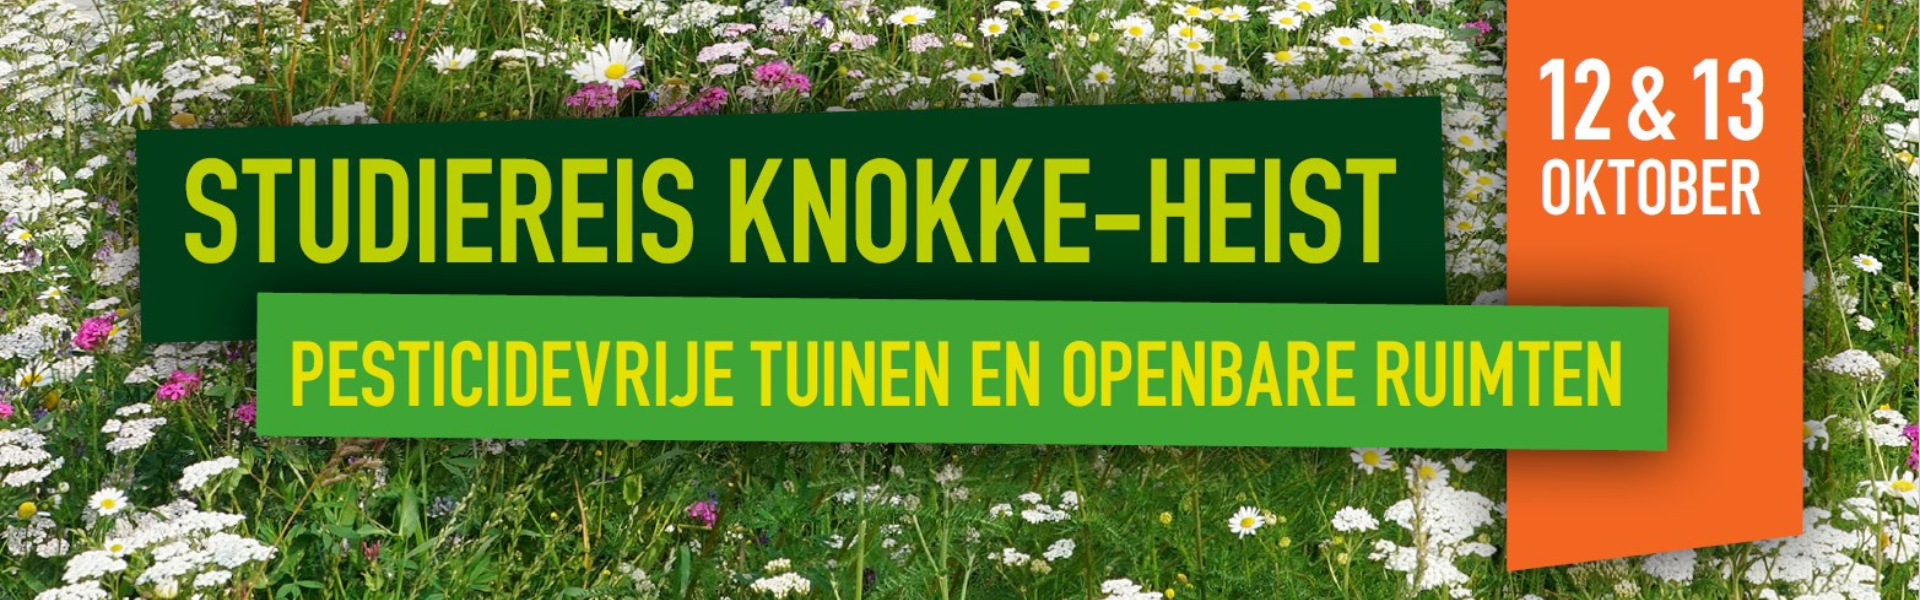 Studiereis Knokke-Heist